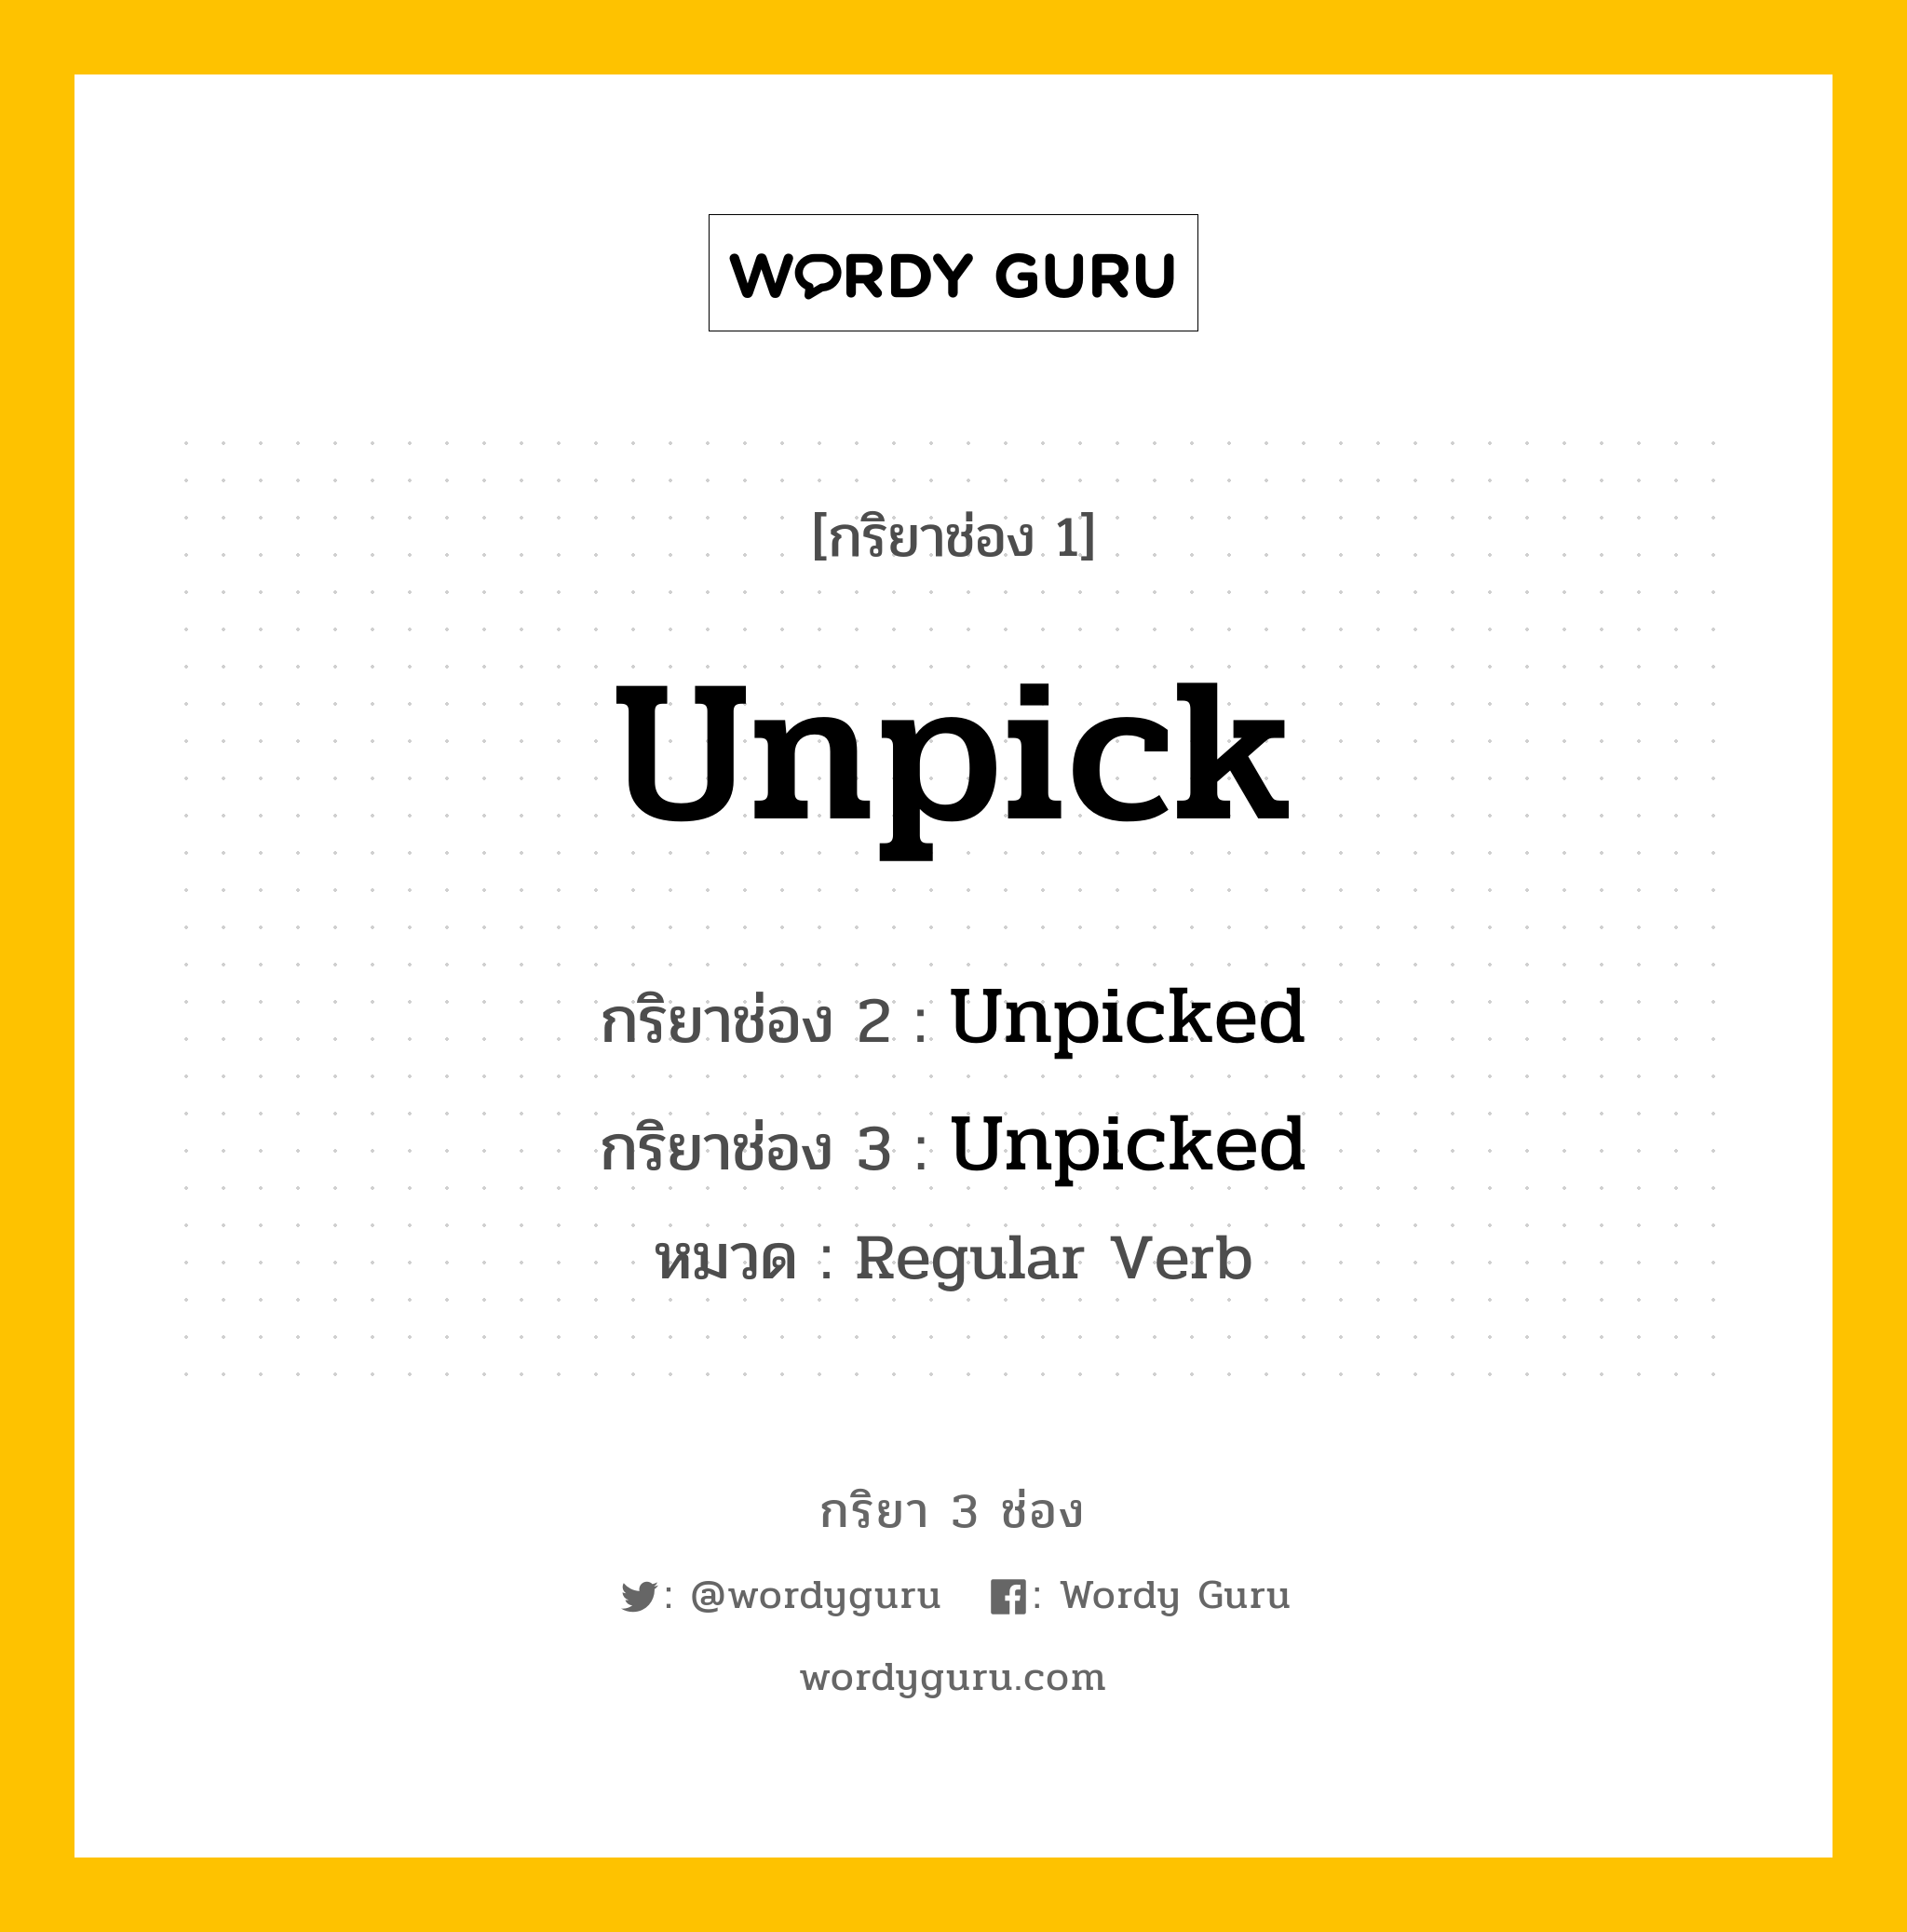 กริยา 3 ช่อง: Unpick ช่อง 2 Unpick ช่อง 3 คืออะไร, กริยาช่อง 1 Unpick กริยาช่อง 2 Unpicked กริยาช่อง 3 Unpicked หมวด Regular Verb หมวด Regular Verb